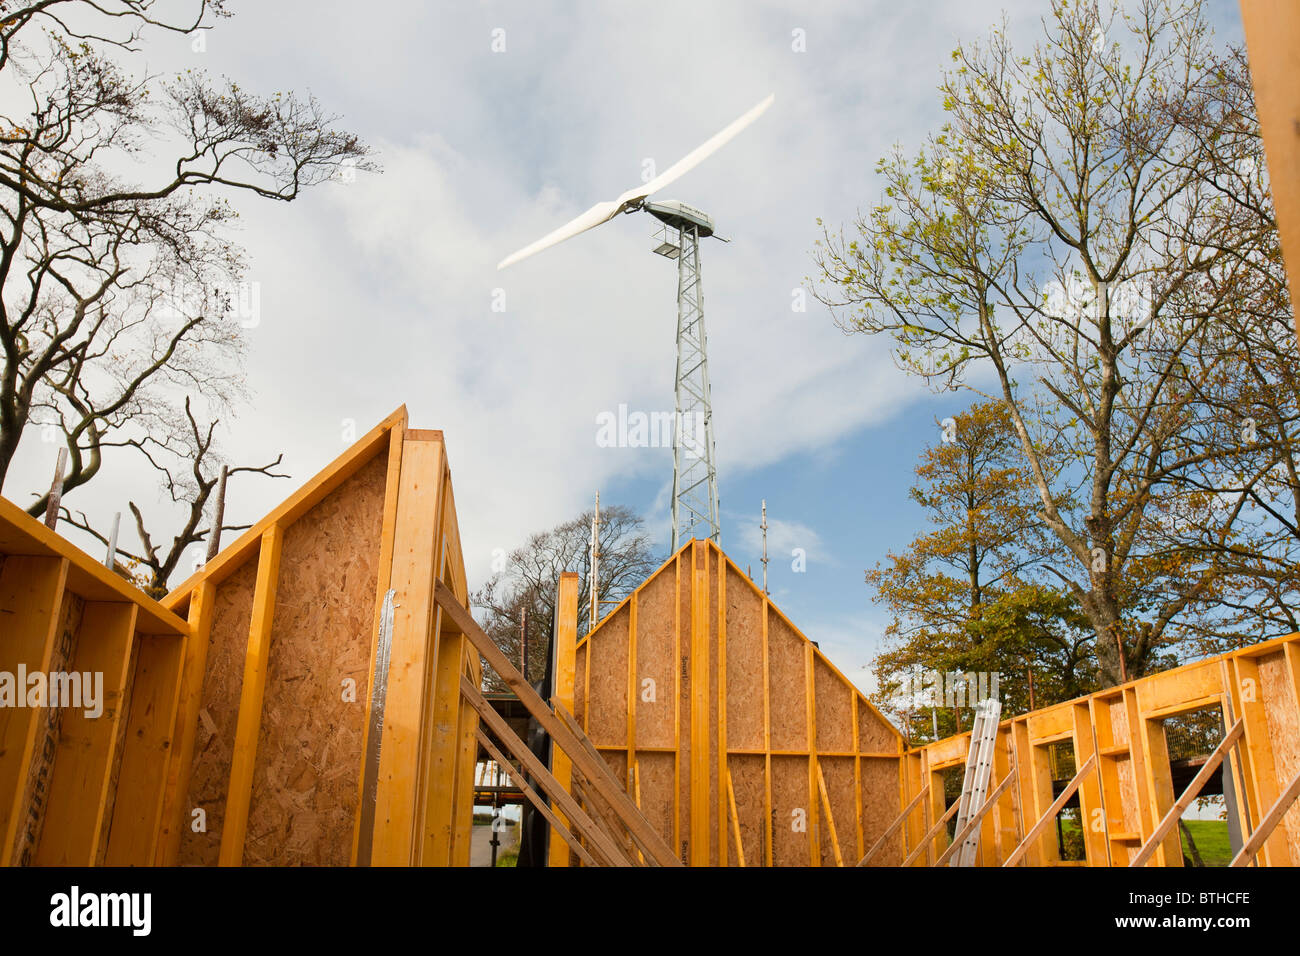 Un architecte conçu eco house avec une éolienne qui fournira à toutes les besoins d'électricité, près de Lesmahagow, Ecosse, Royaume-Uni Banque D'Images